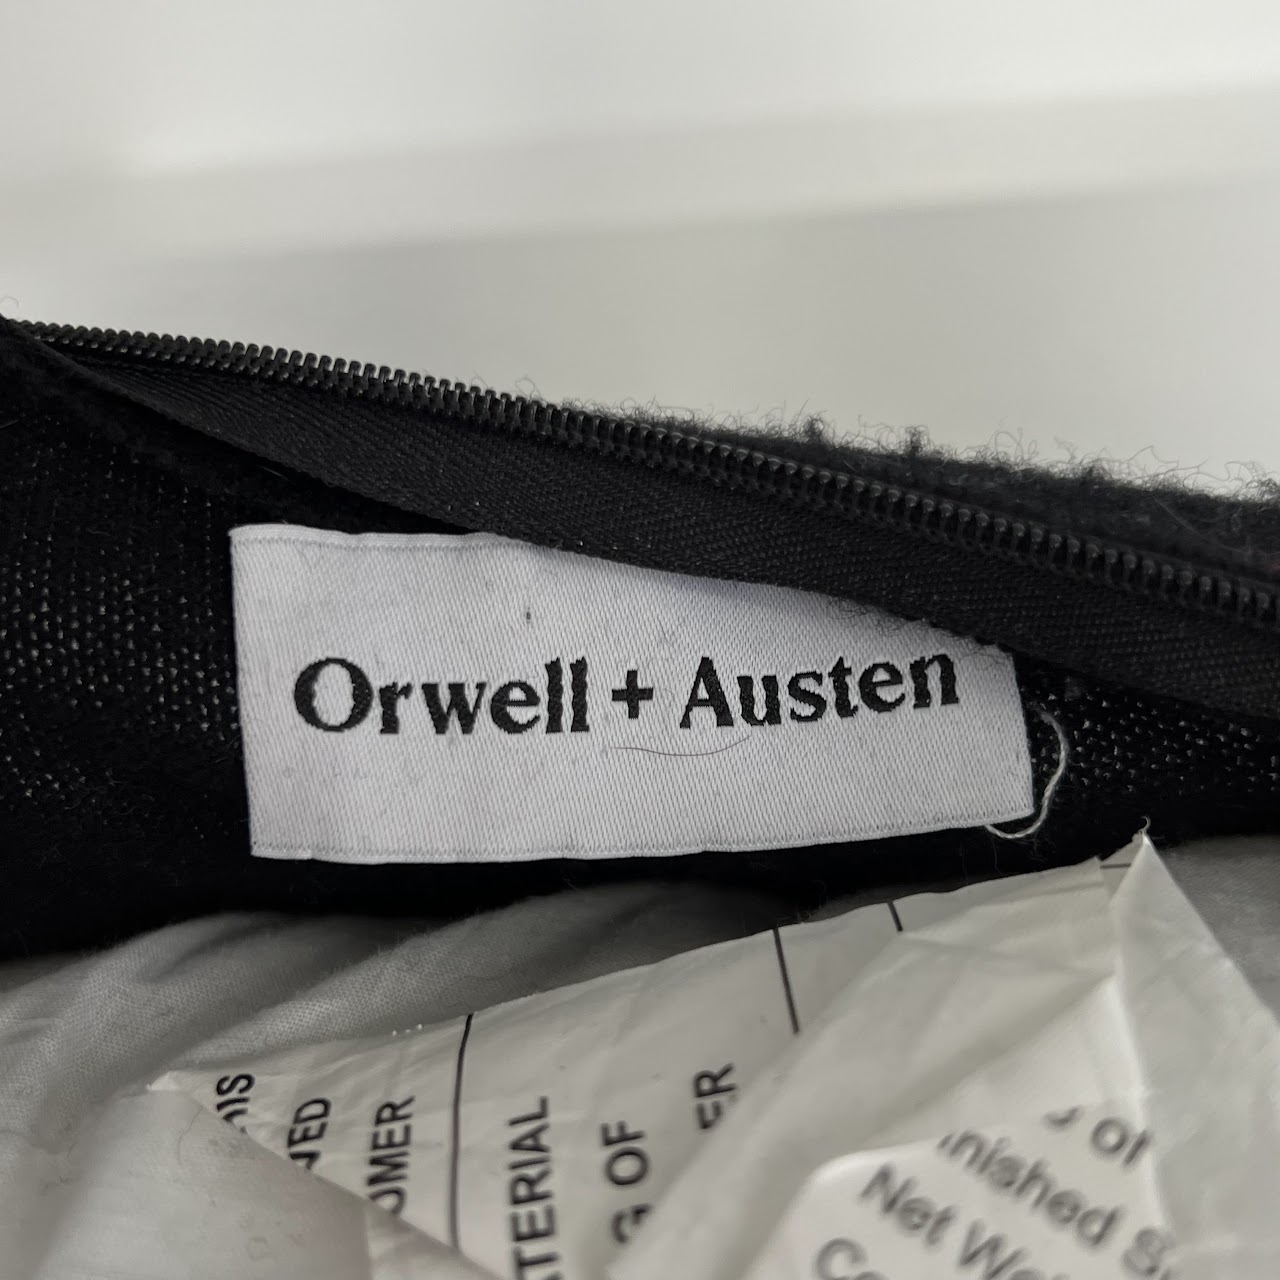 Orwell + Austen Cashmere Blend Pillow Pair